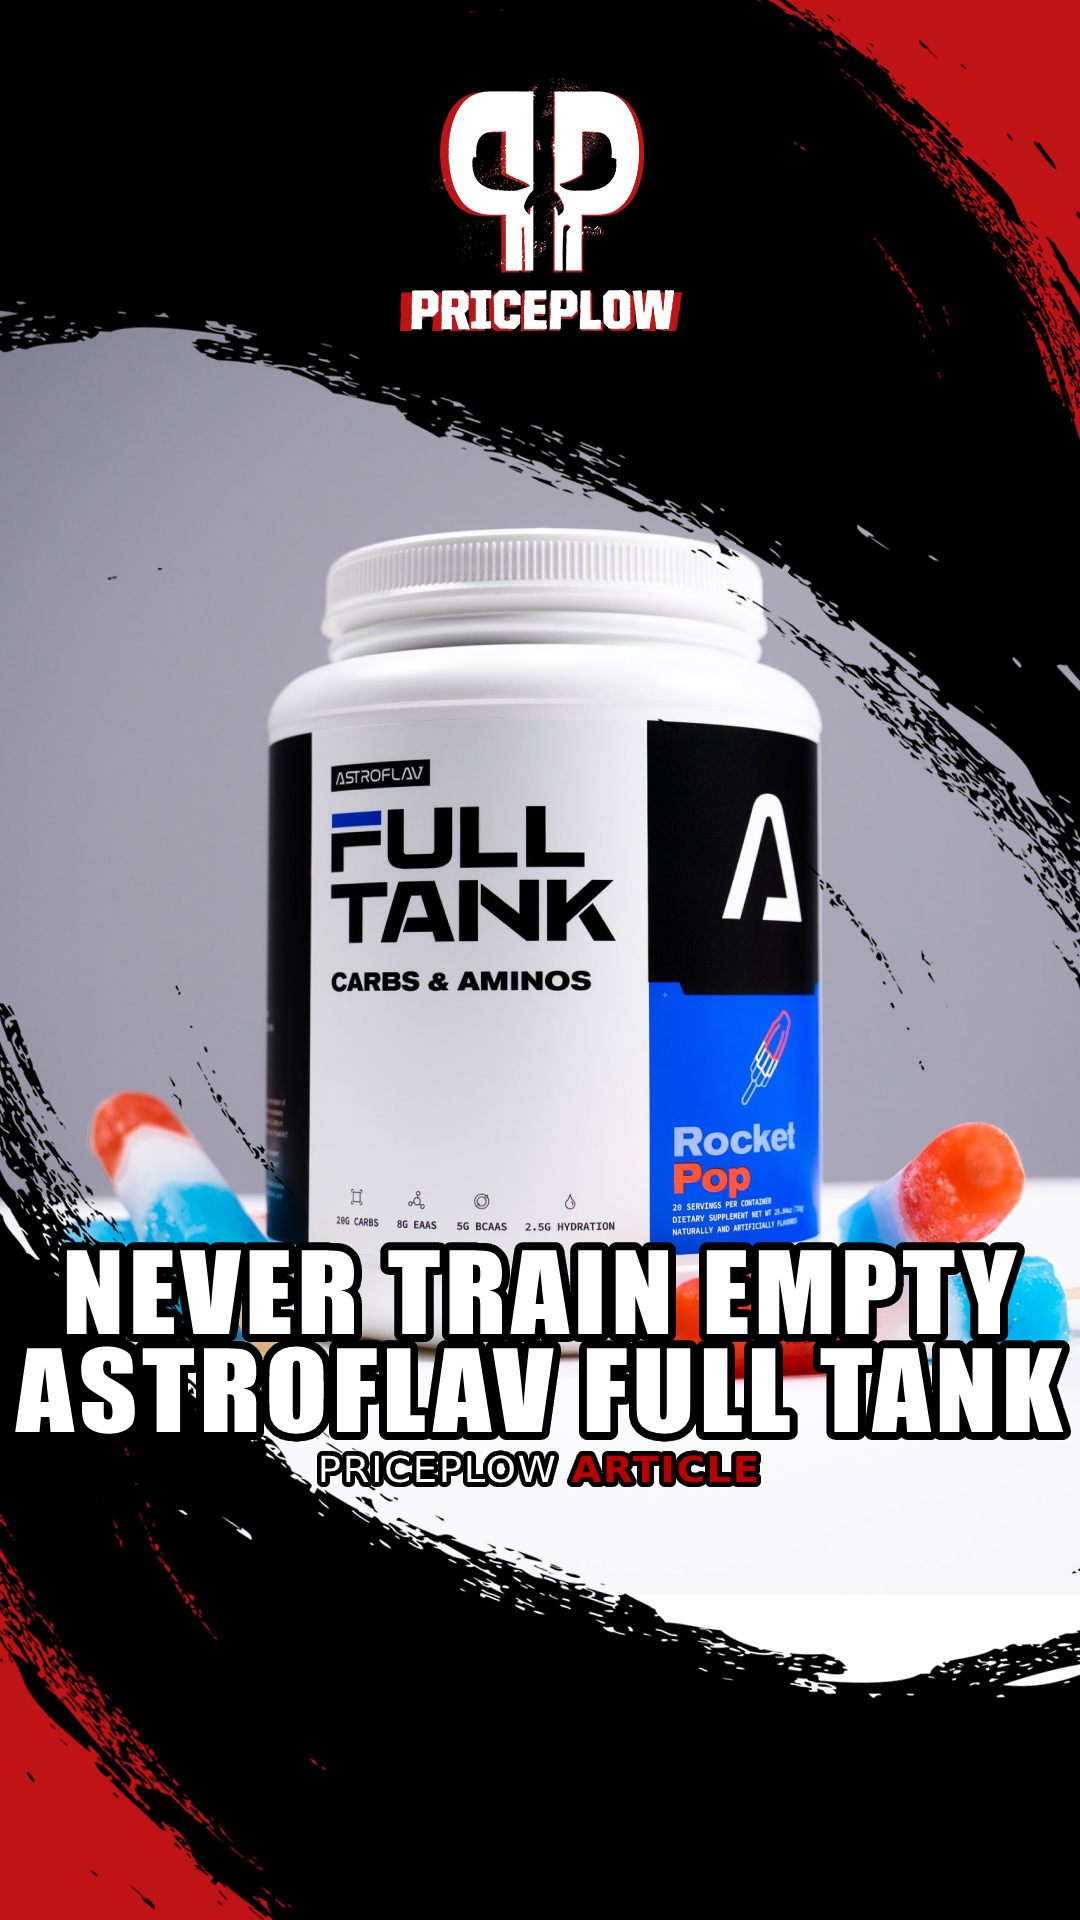 AstroFlav Full Tank